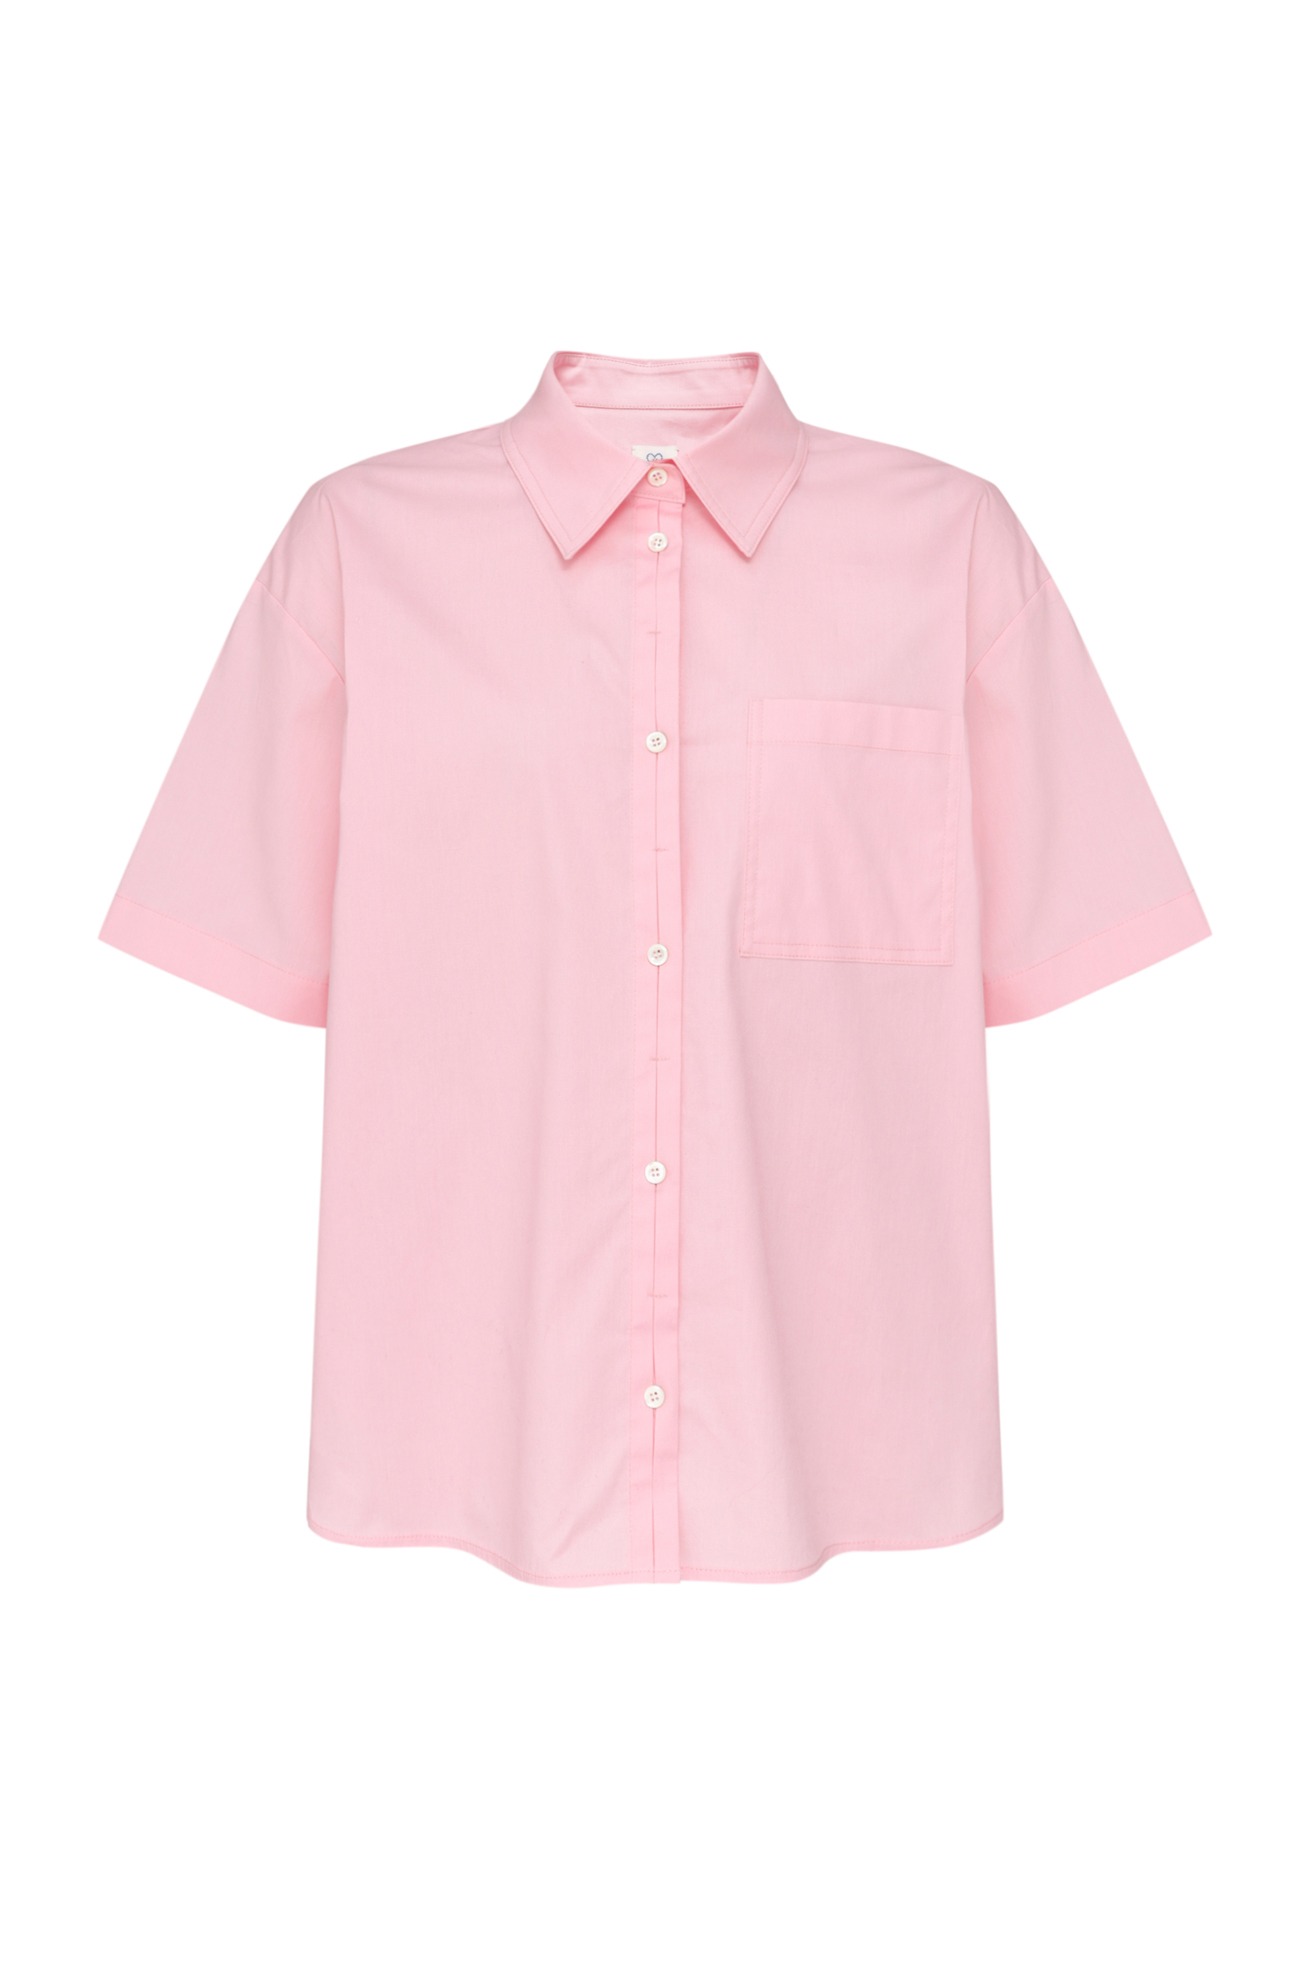 Hideable Button Short Sleeve Shirt (Pink)